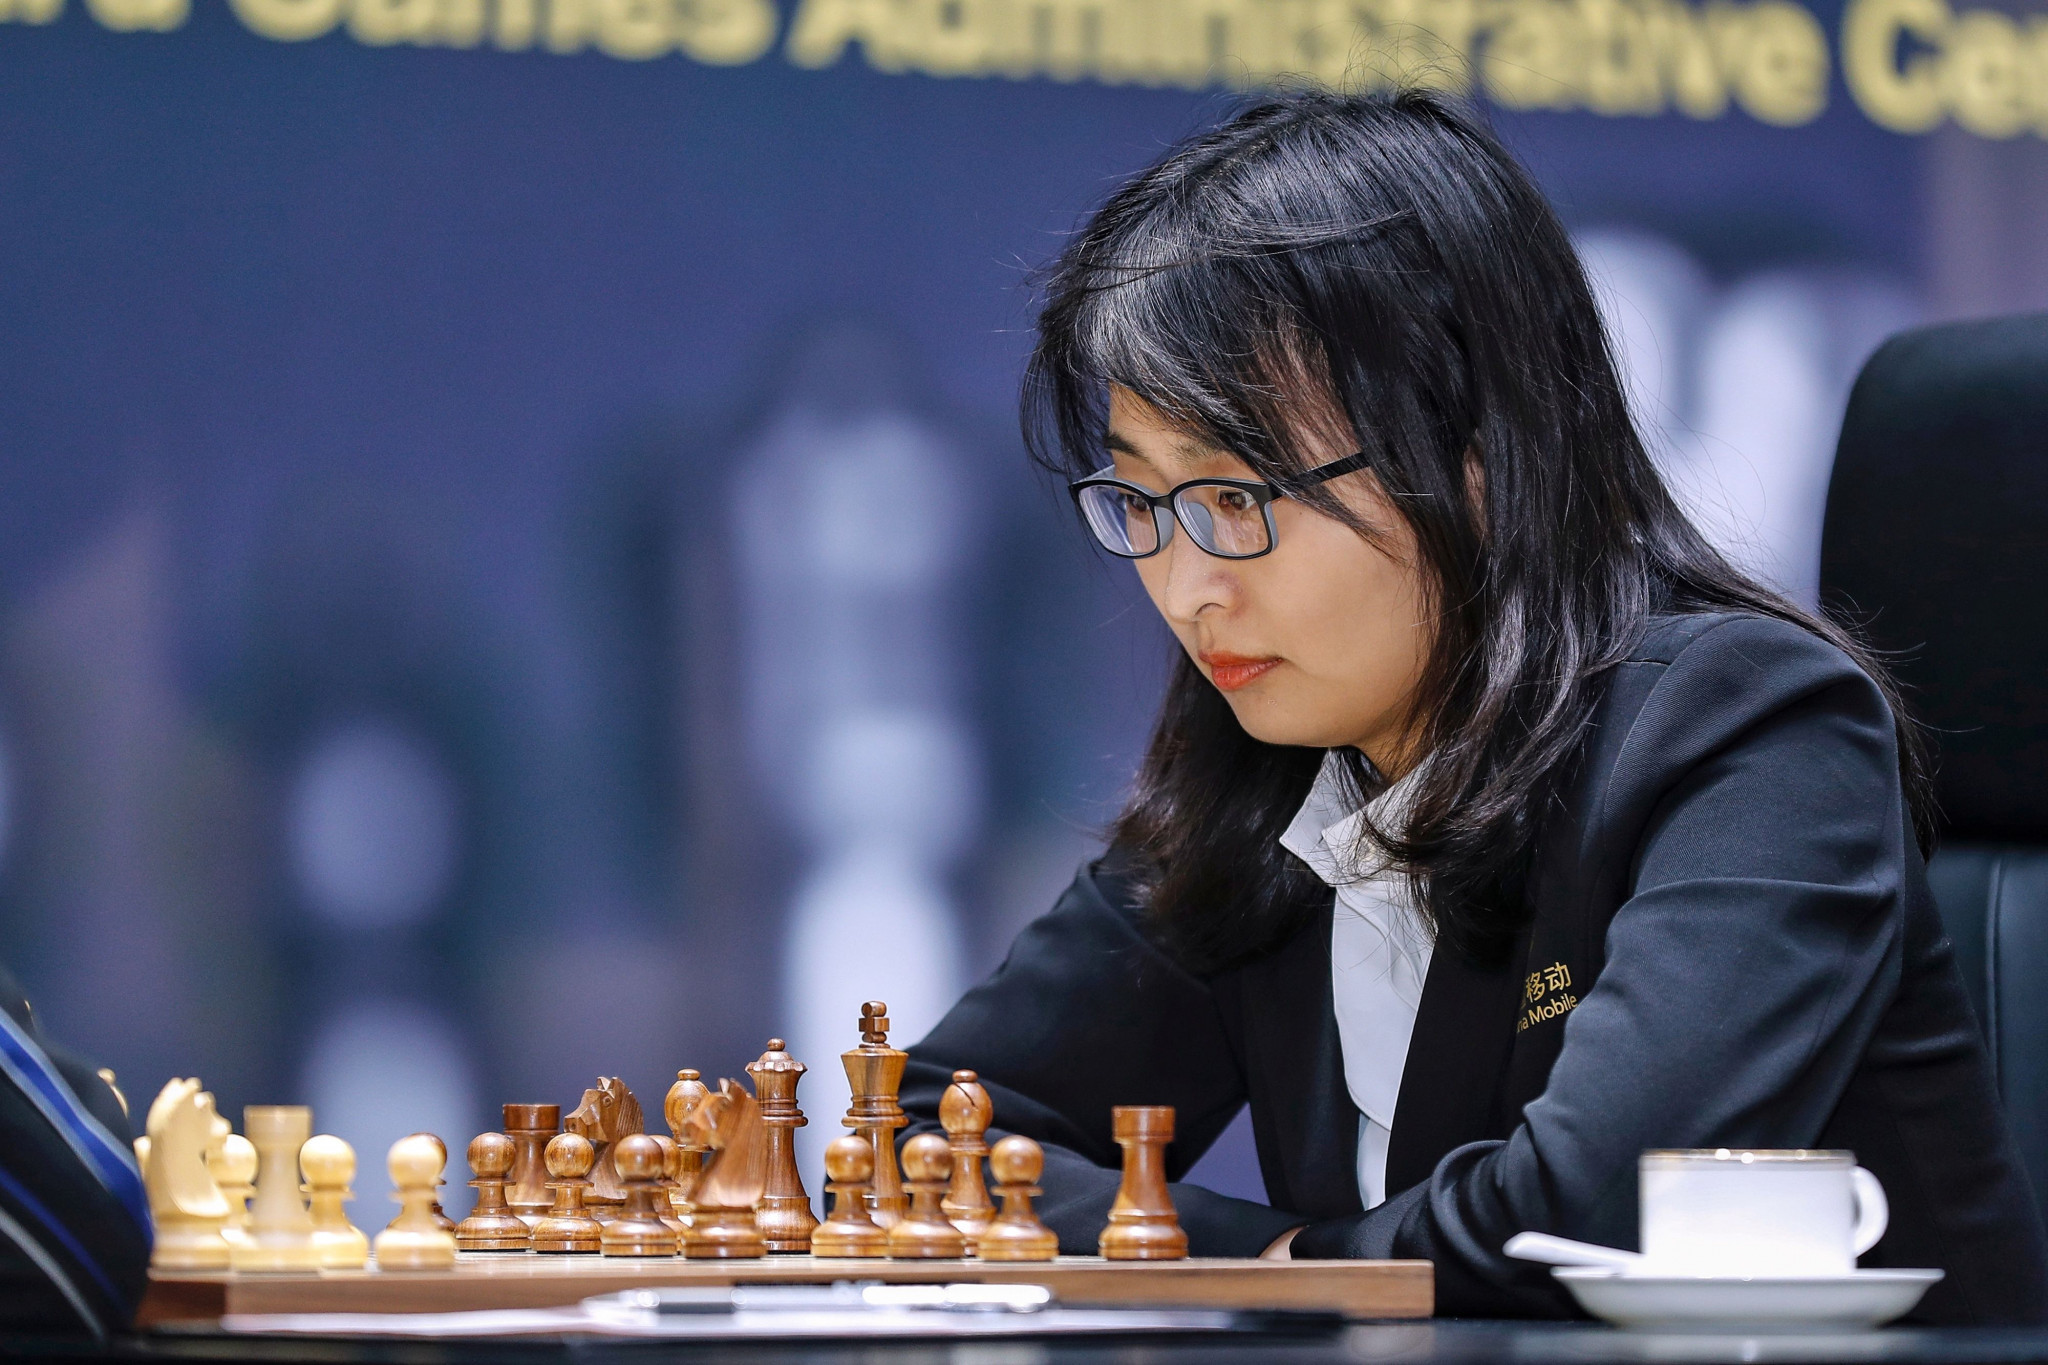 April 2020 World Chess Ratings - Russia's Aleksandra surpasses World Chess  Champion China's Ju Wenjun!